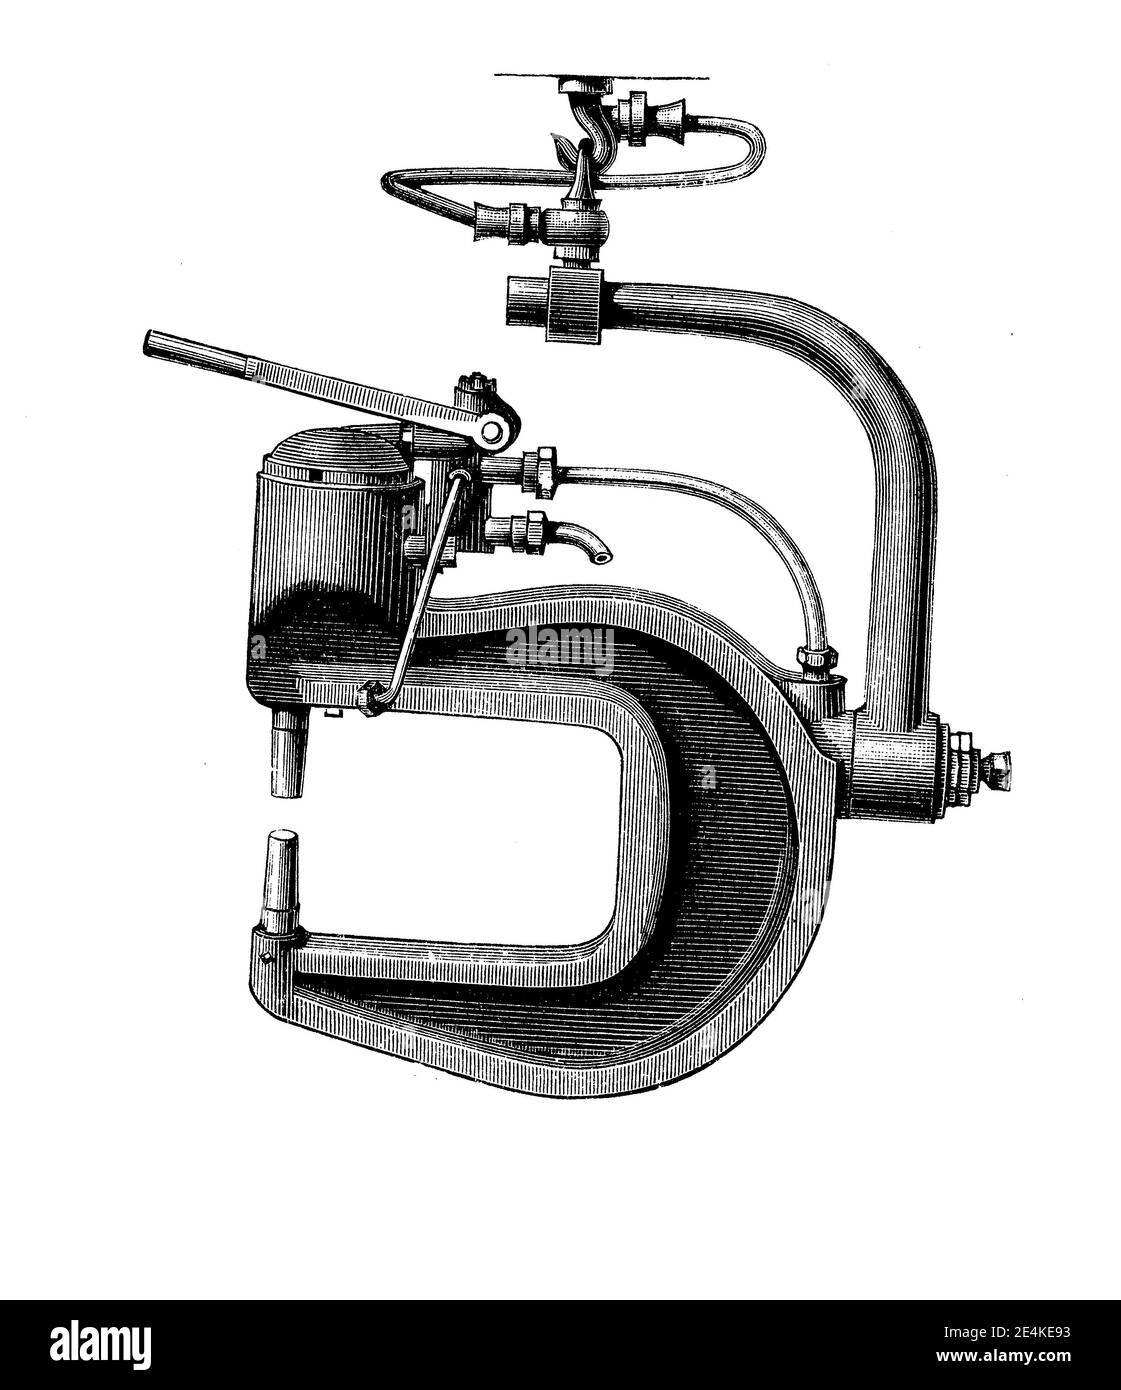 La rivettatrice idraulica portatile inventata da Ralph Hart Tweddell agevolò notevolmente la costruzione di caldaie, ponti e navi, incisione del XIX secolo Foto Stock